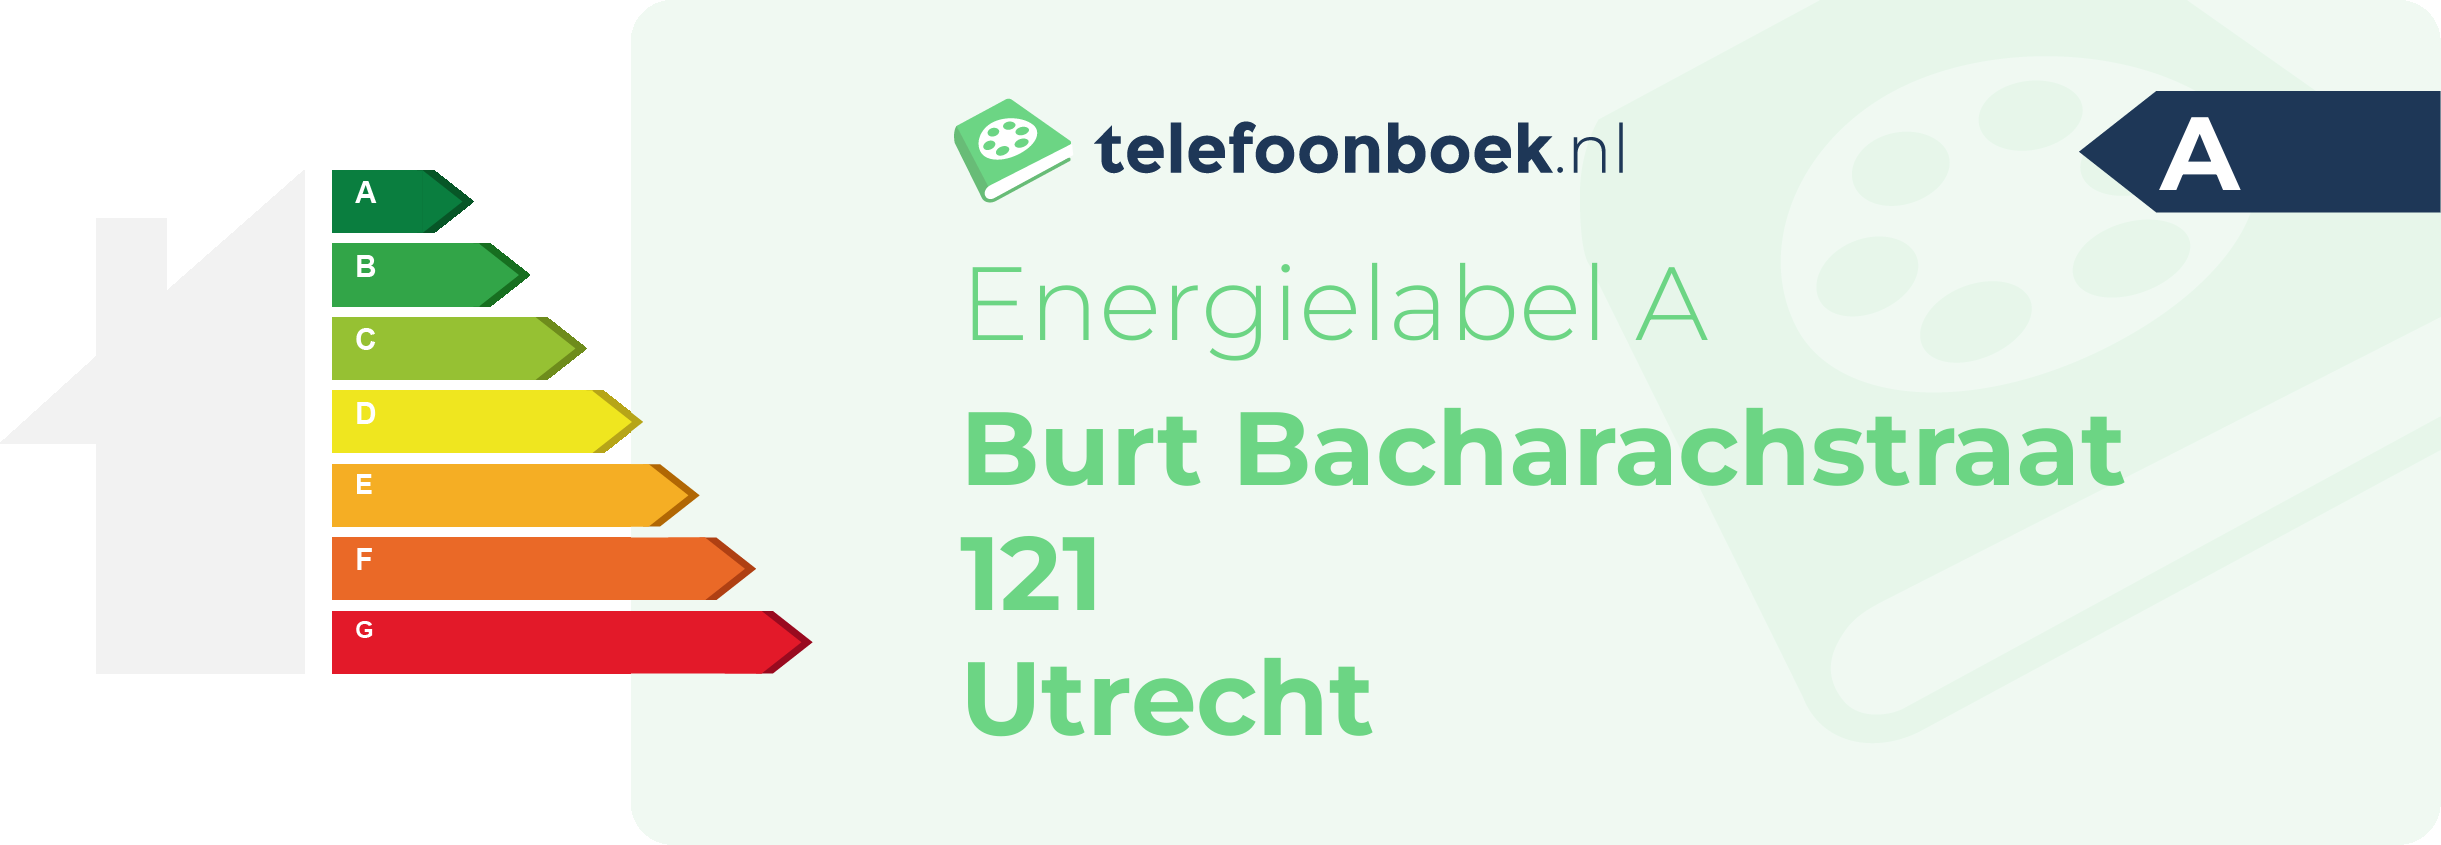 Energielabel Burt Bacharachstraat 121 Utrecht